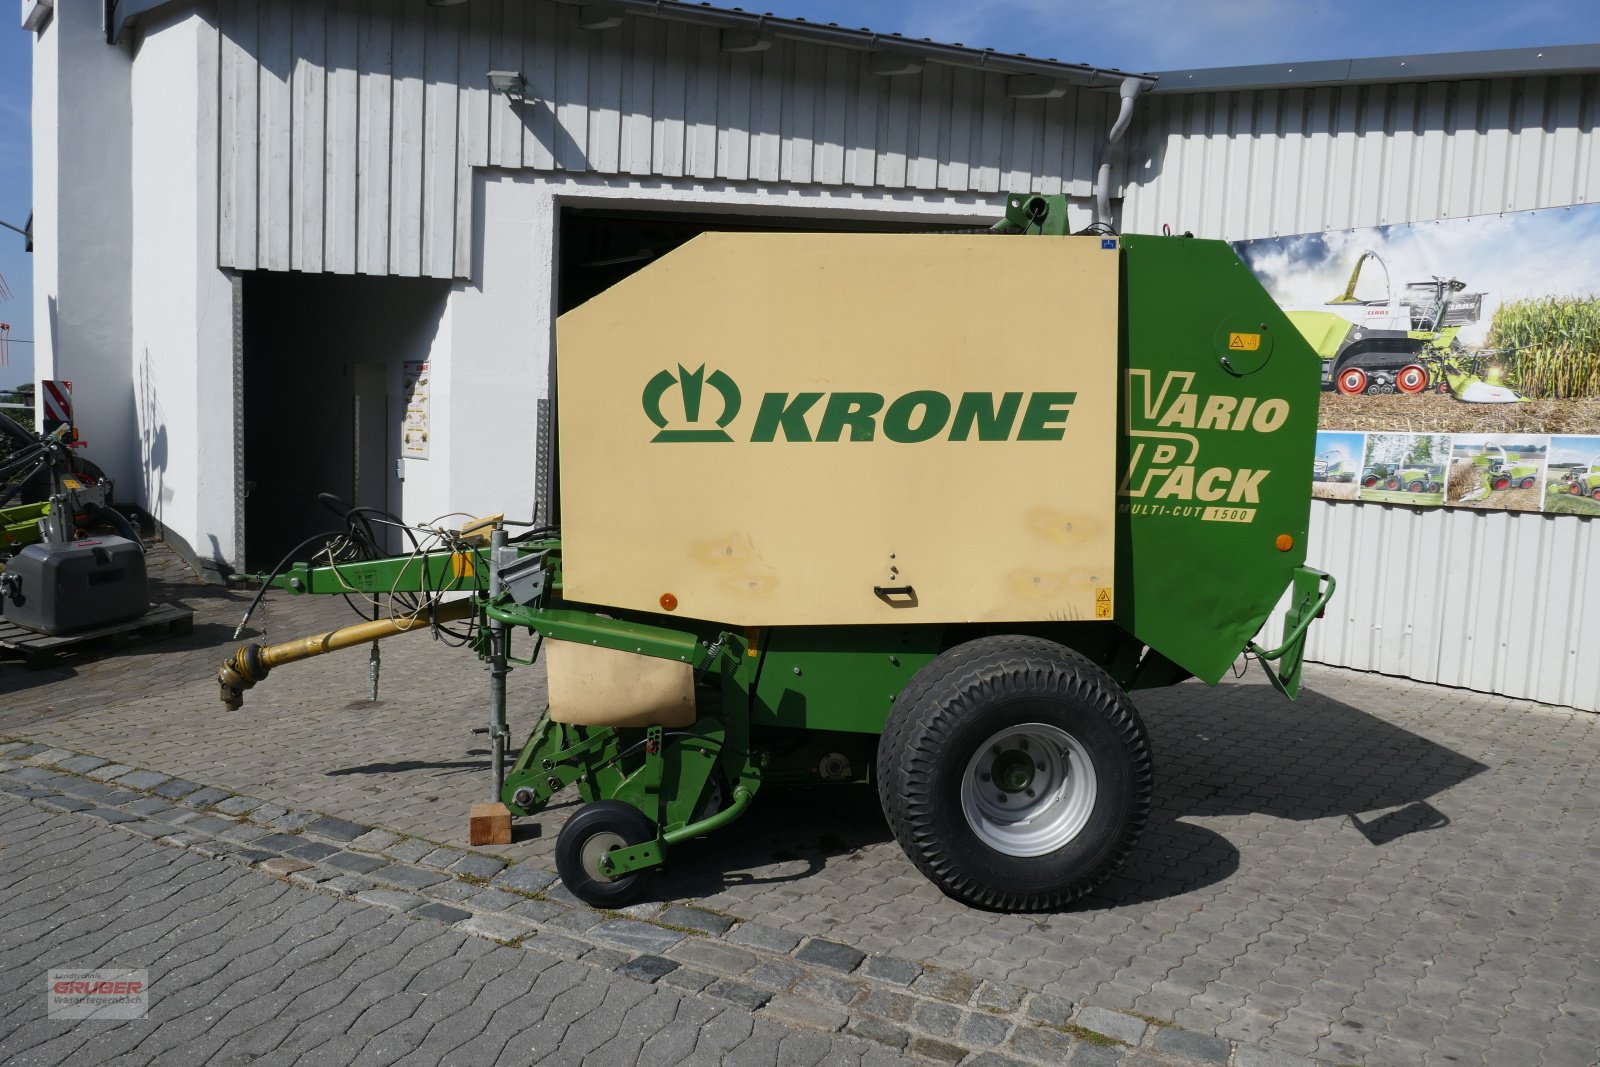 Rundballenpresse des Typs Krone Vario Pack Multi-Cut 1500, Gebrauchtmaschine in Dorfen (Bild 5)